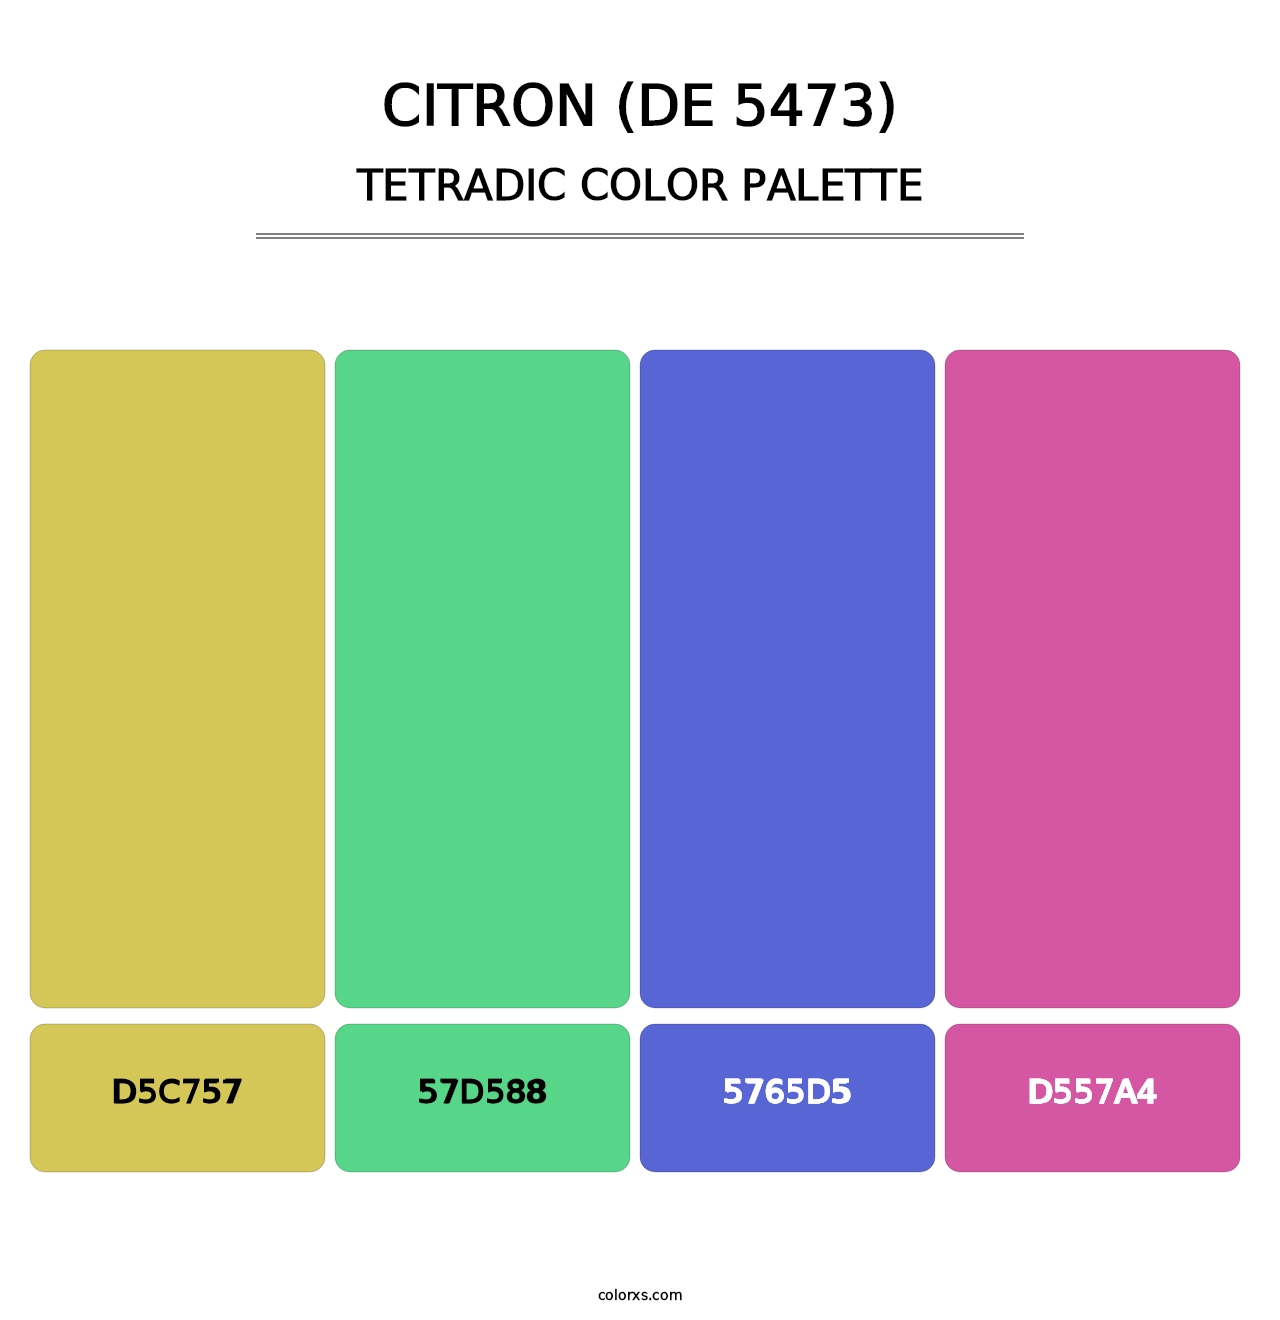 Citron (DE 5473) - Tetradic Color Palette